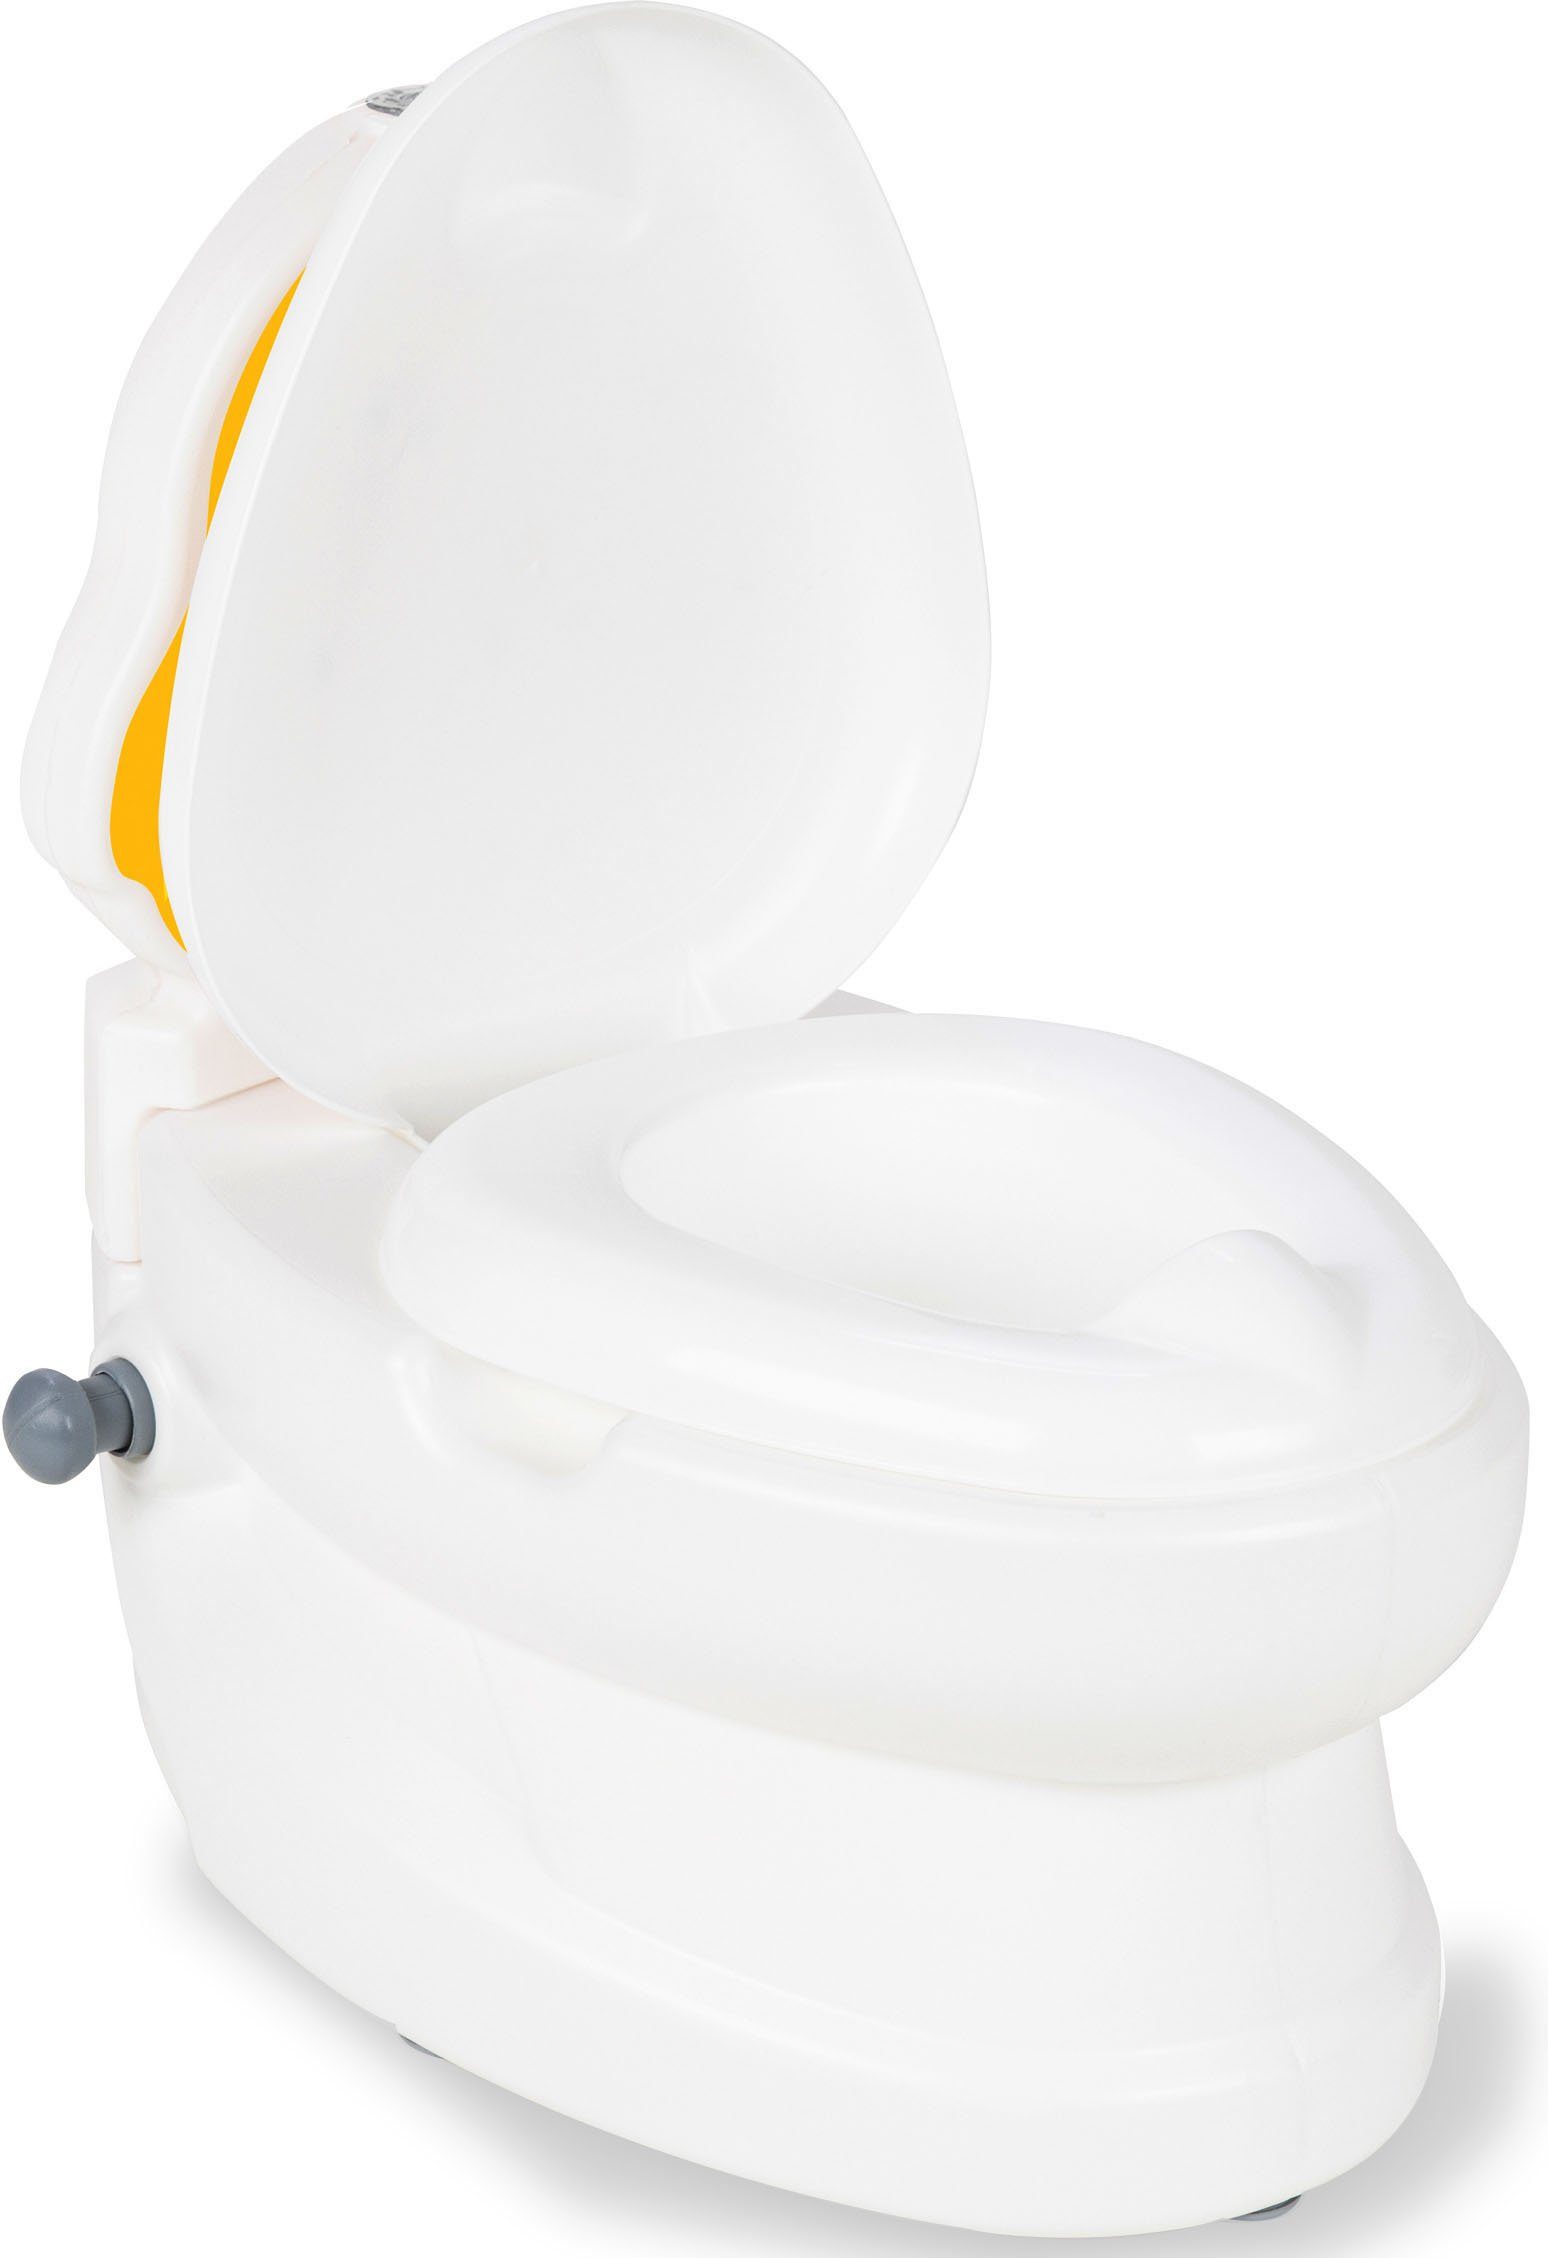 Jamara Toilettentrainer Küken, Reinigung Toilettenpapierhalter, mit Meine separat Behältnis zur kann werden und kleine herausgenommen Spülsound Toilette